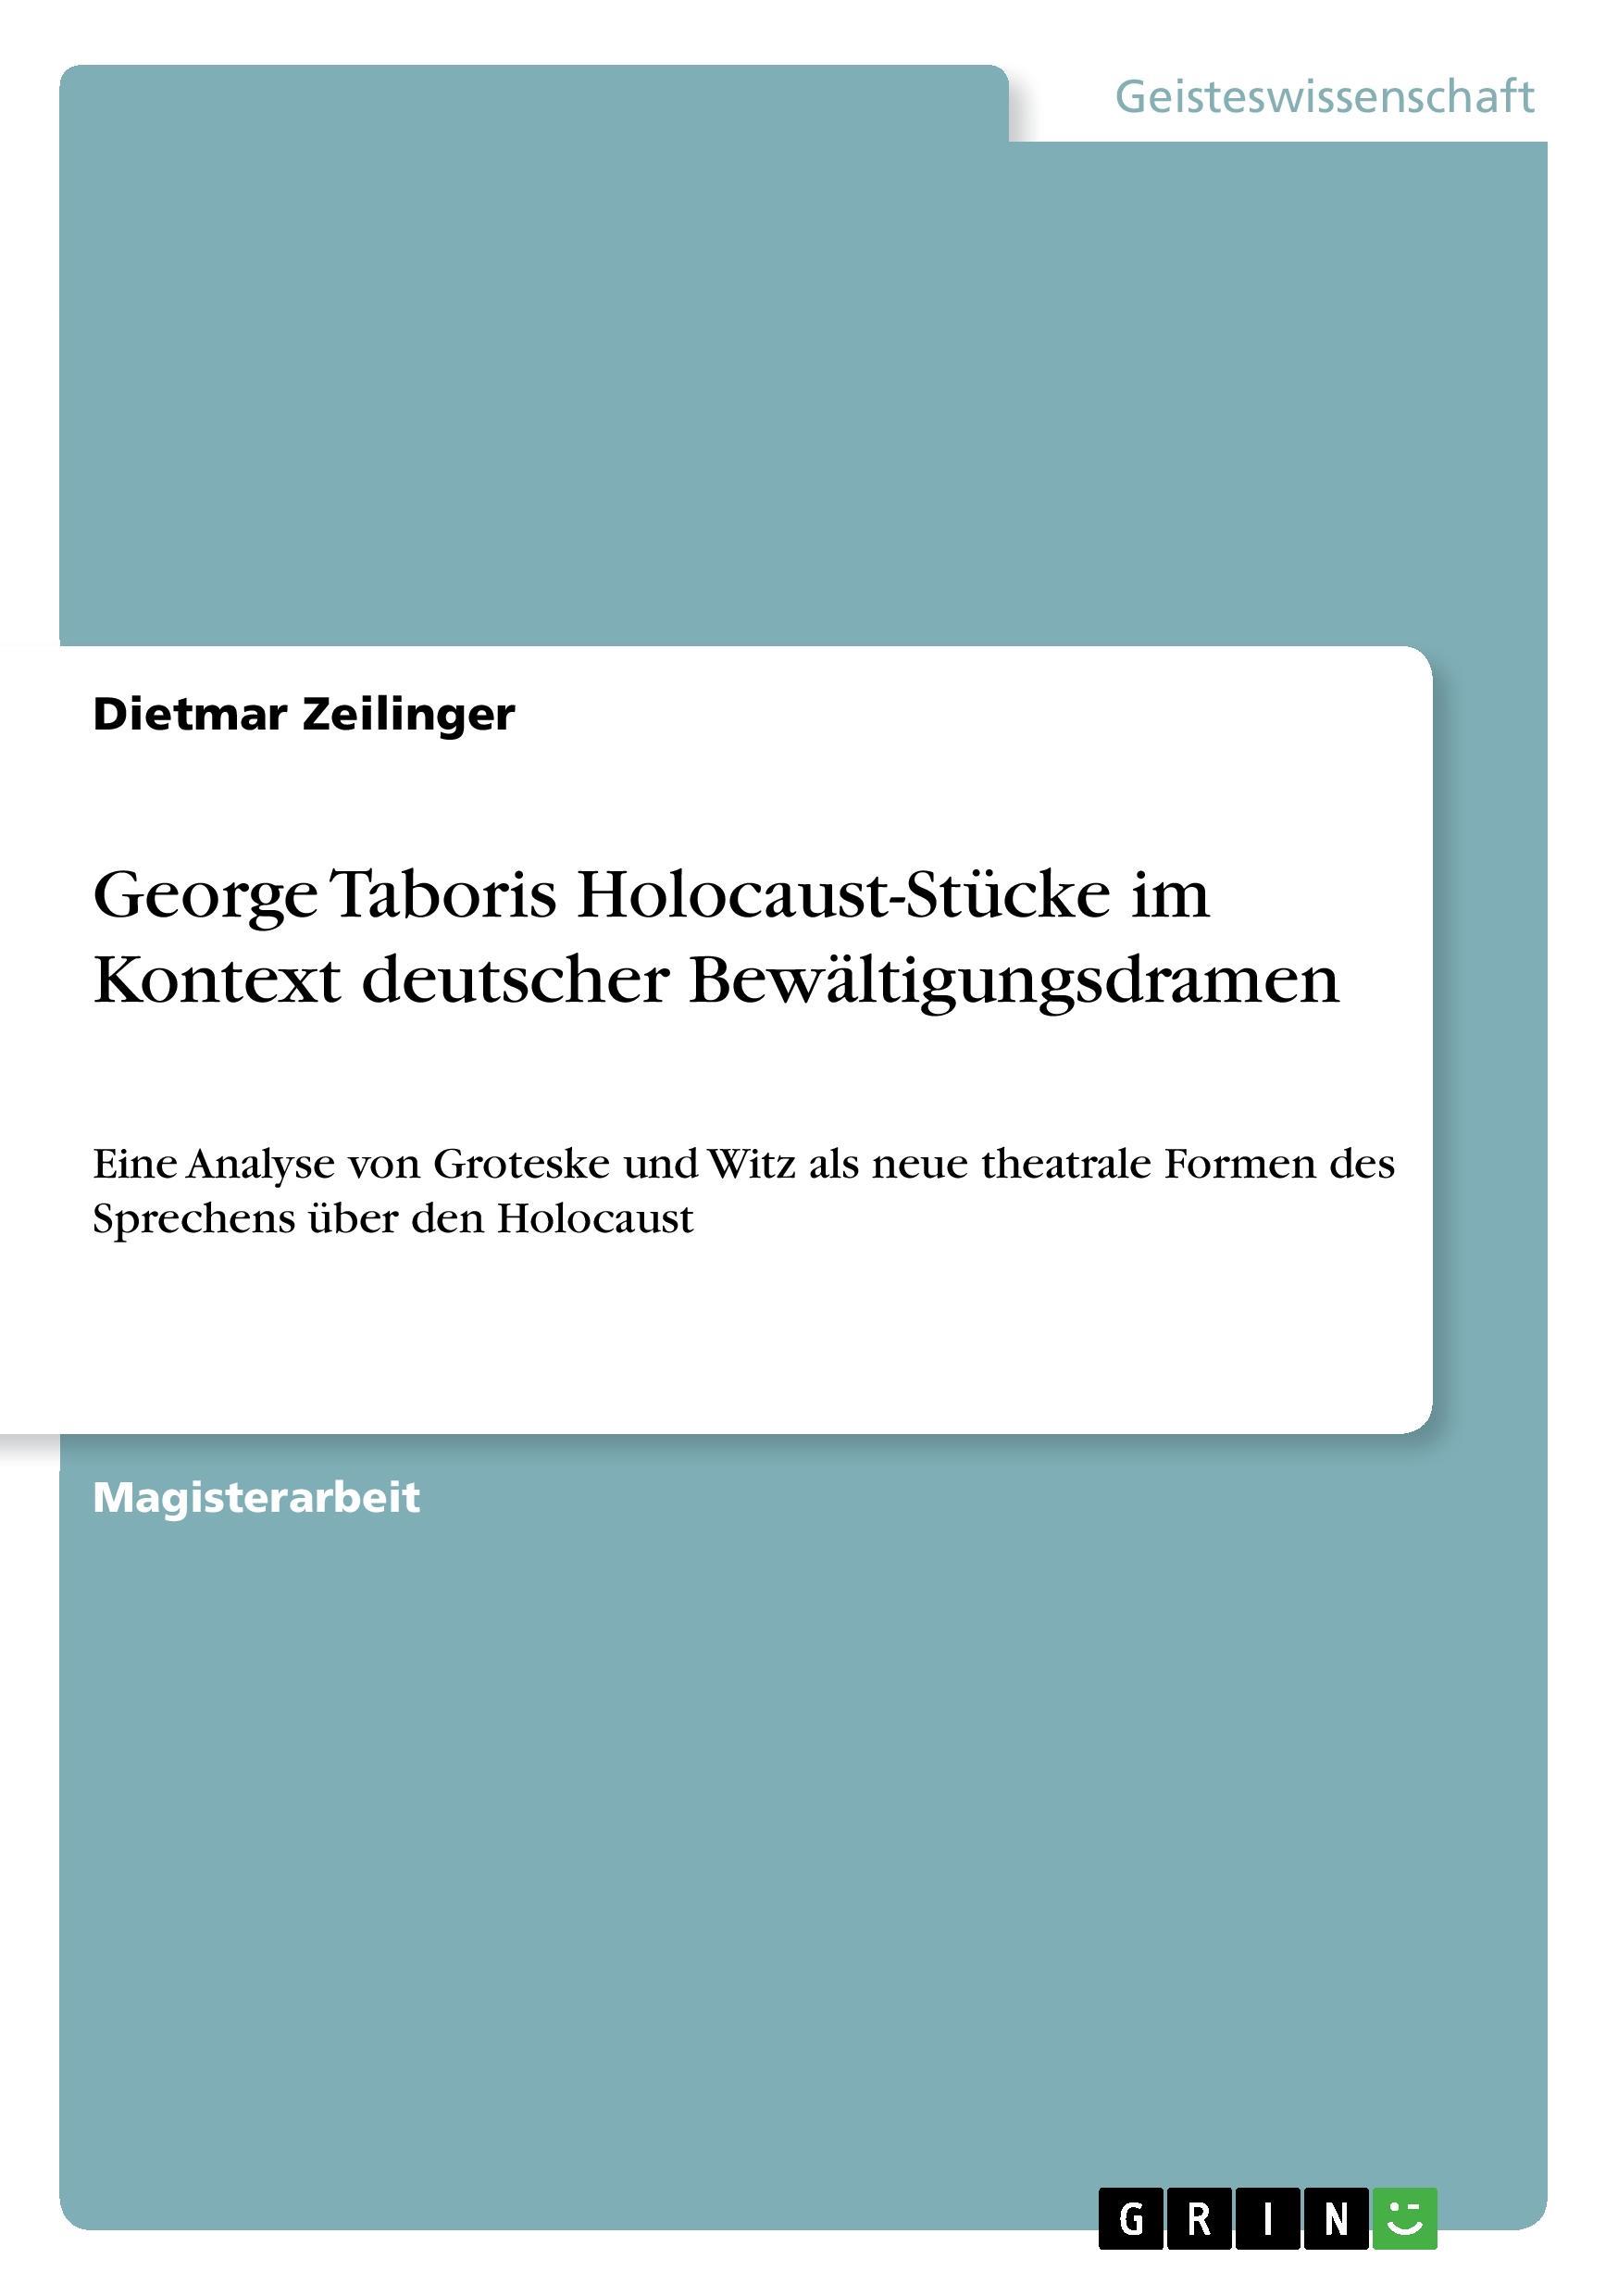 George Taboris Holocaust-Stuecke im Kontext deutscher Bewaeltigungsdramen - Zeilinger, Dietmar